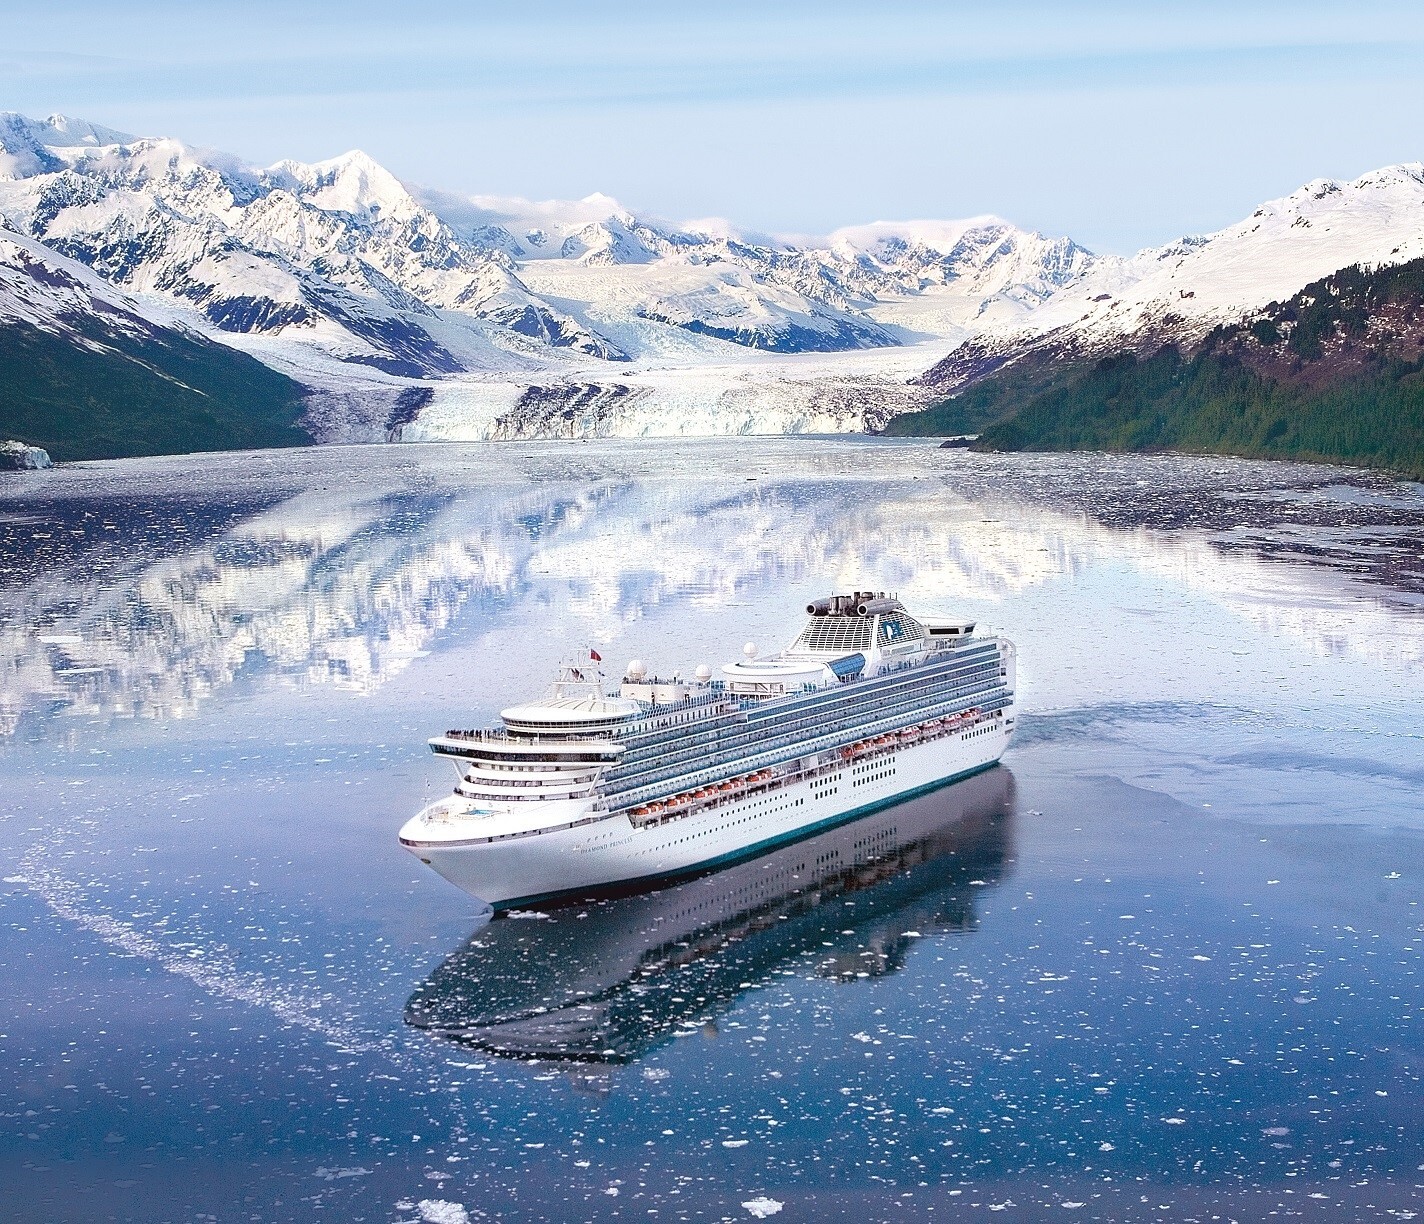 公主邮轮享誉全球的阿拉斯加航线相互结合豪华邮轮体验和备受赞誉的岸上观光行程